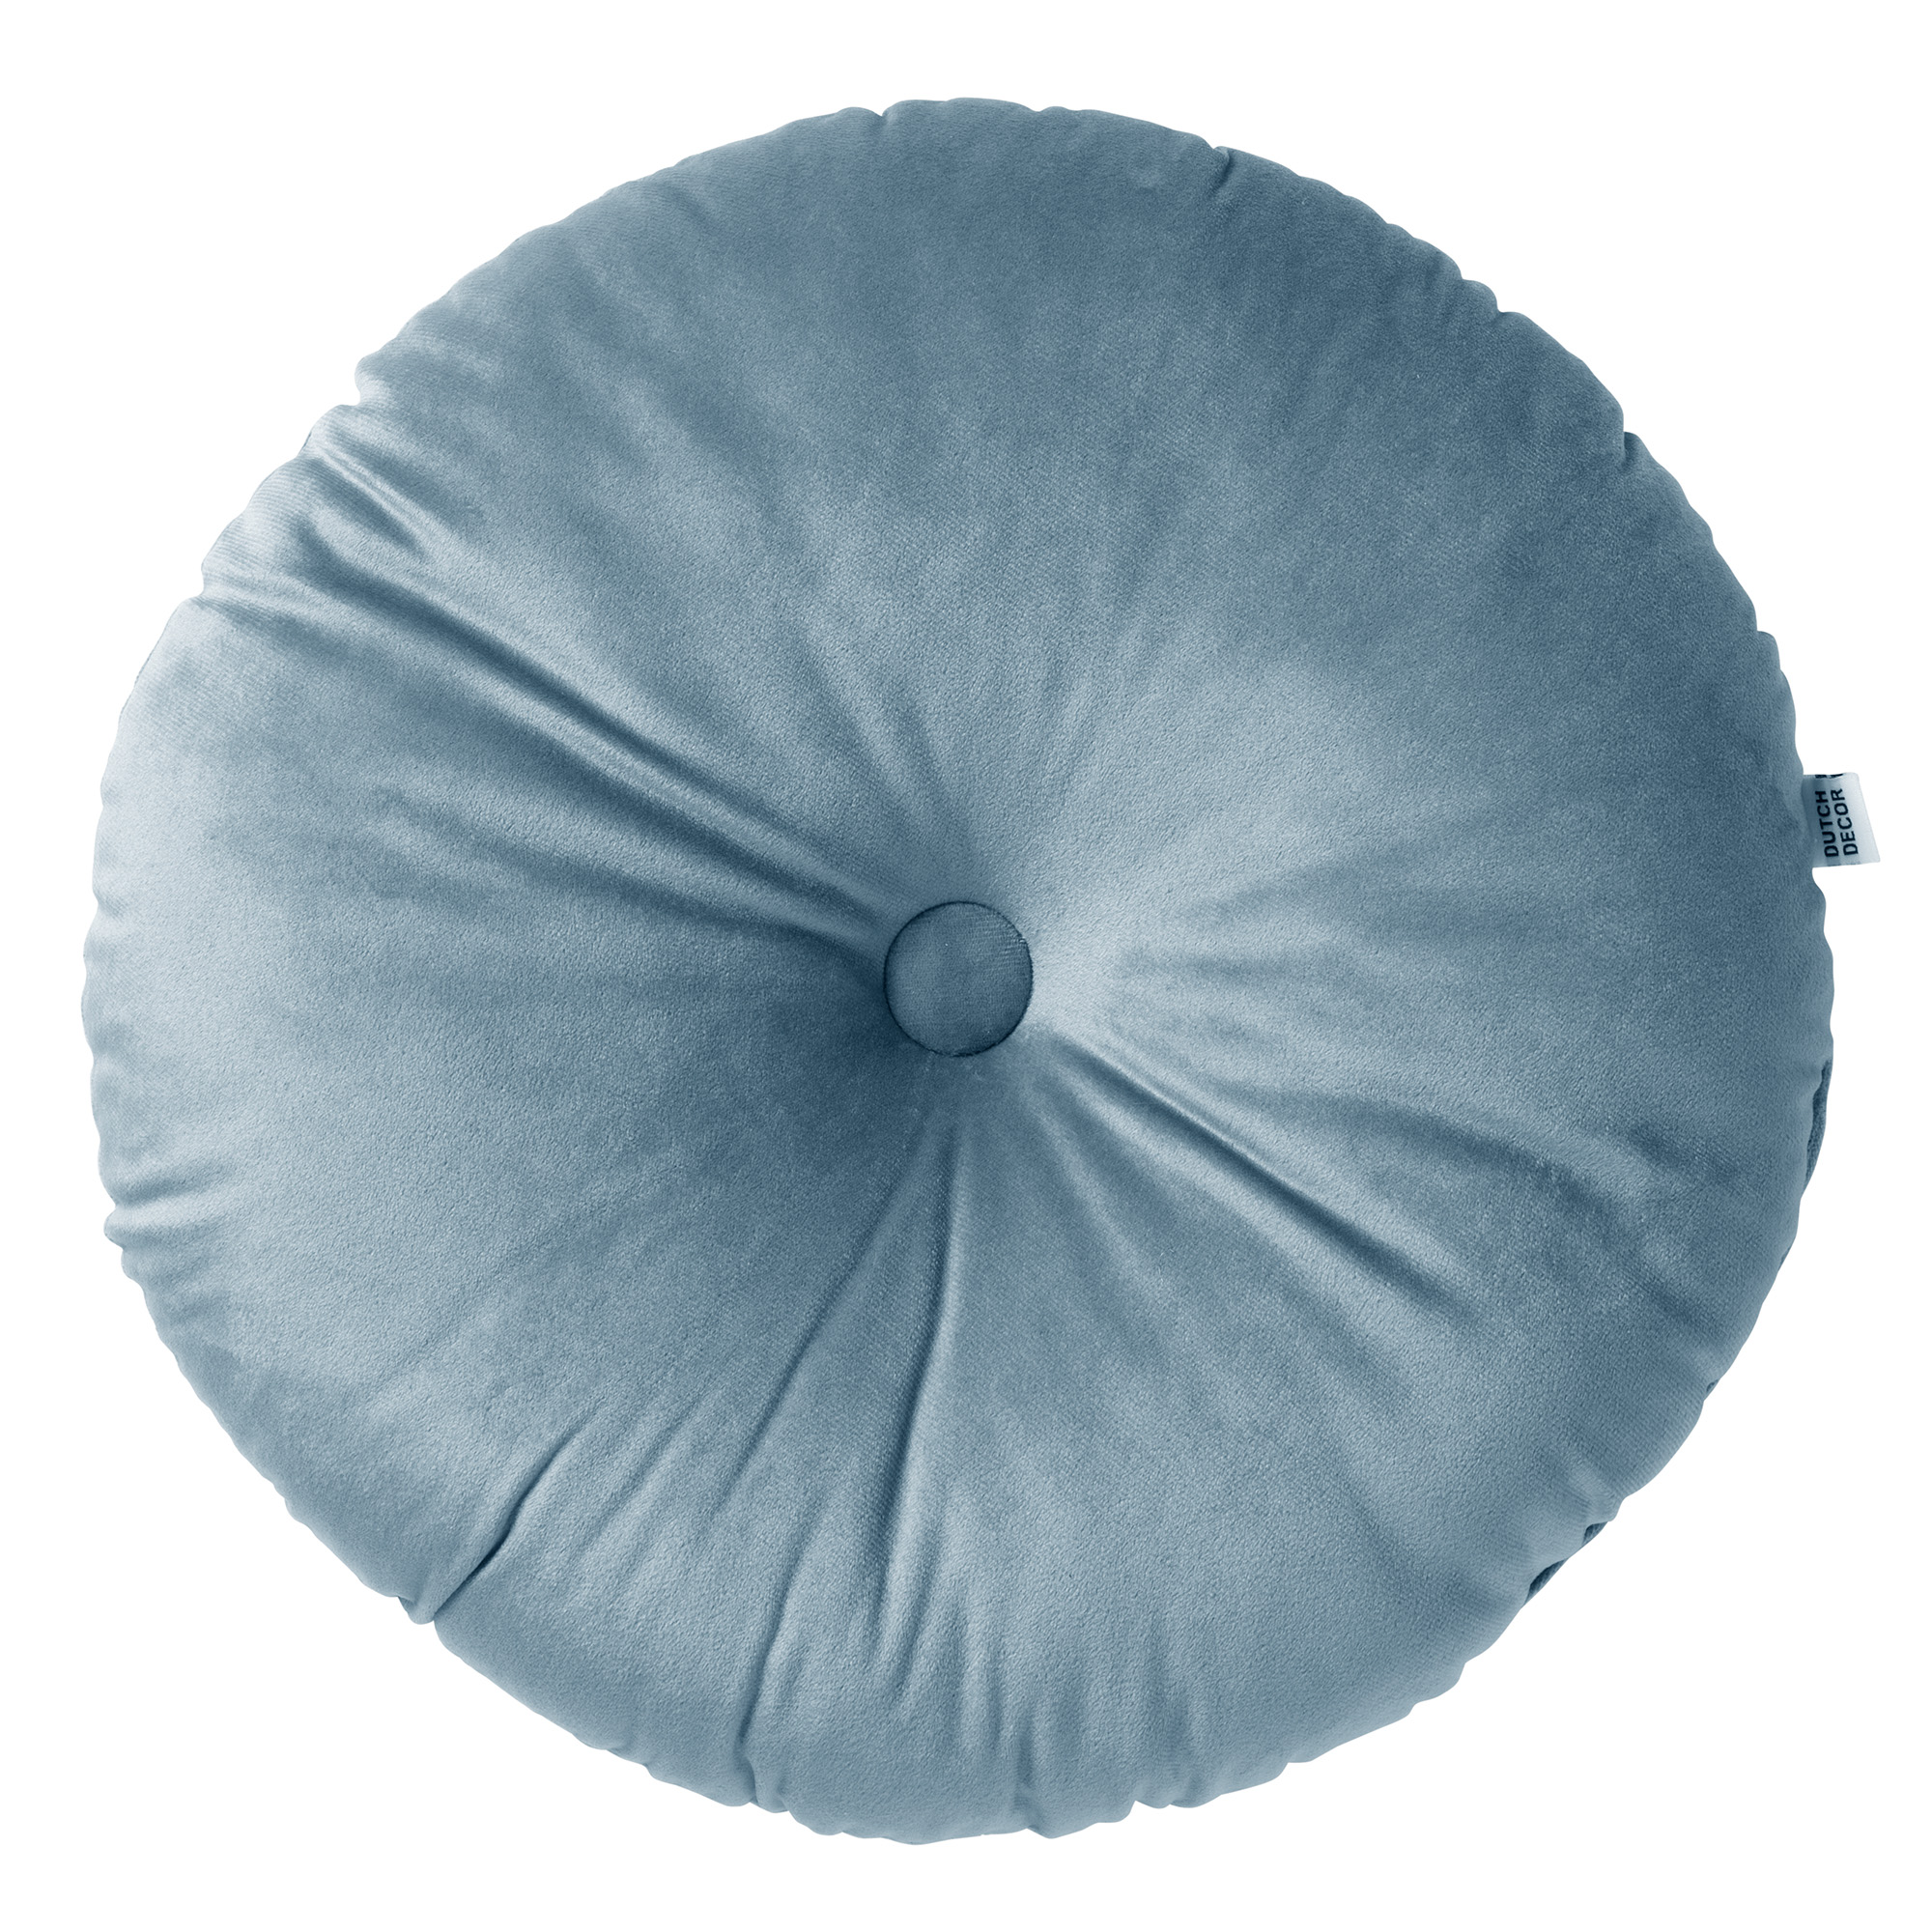 OLLY - Sierkussen rond velvet Provincial Blue 40 cm - blauw